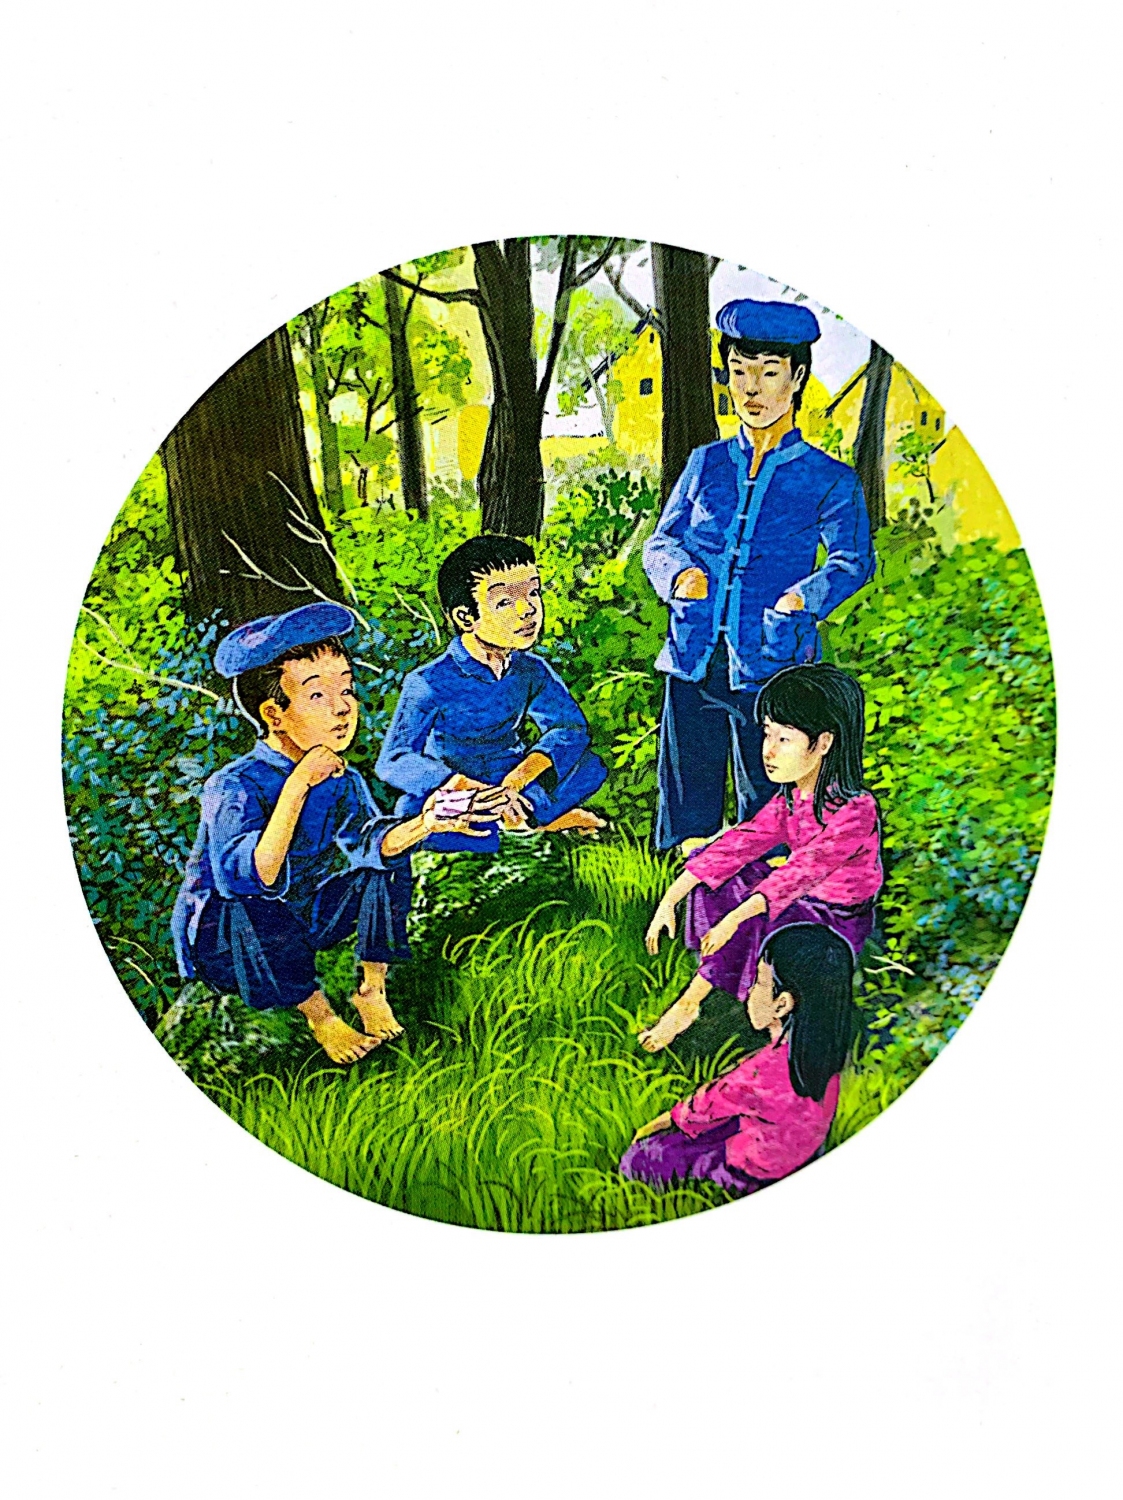 Ảnh minh họa theo Chuyện kể về 5 đội viên đầu tiên, Nhà xuất bản Kim Đồng, 2021.